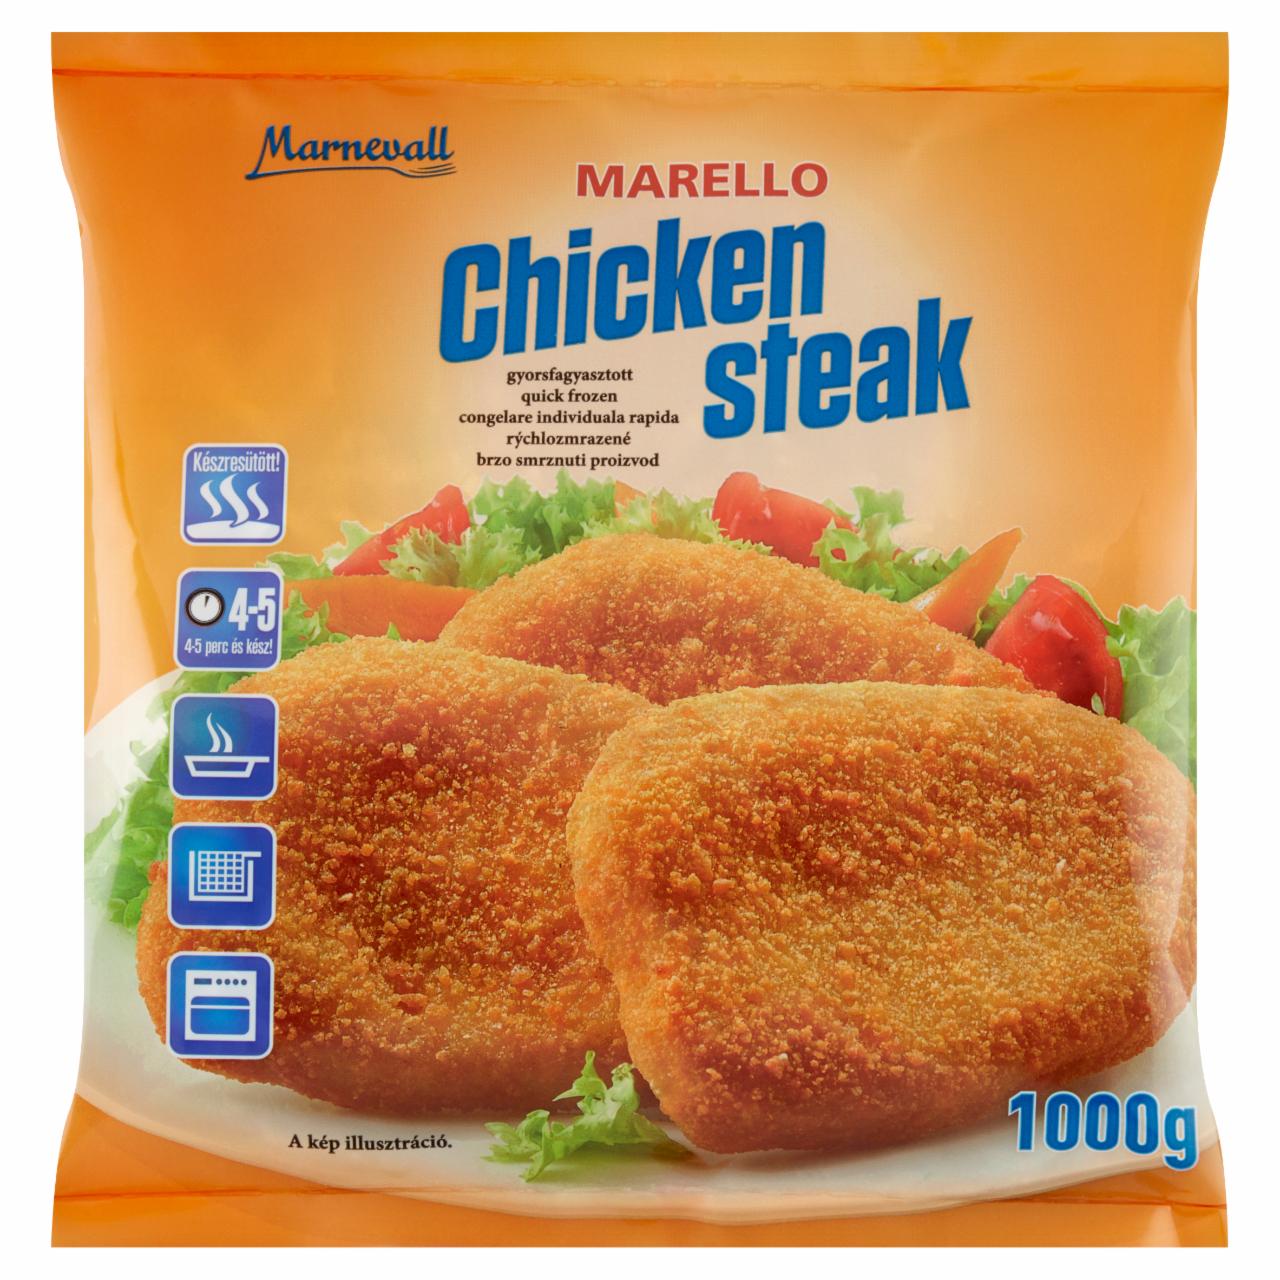 Képek - Marello Chicken Steak gyorsfagyasztott, panírozott csirkemell felhasználásával készült termék 1000 g